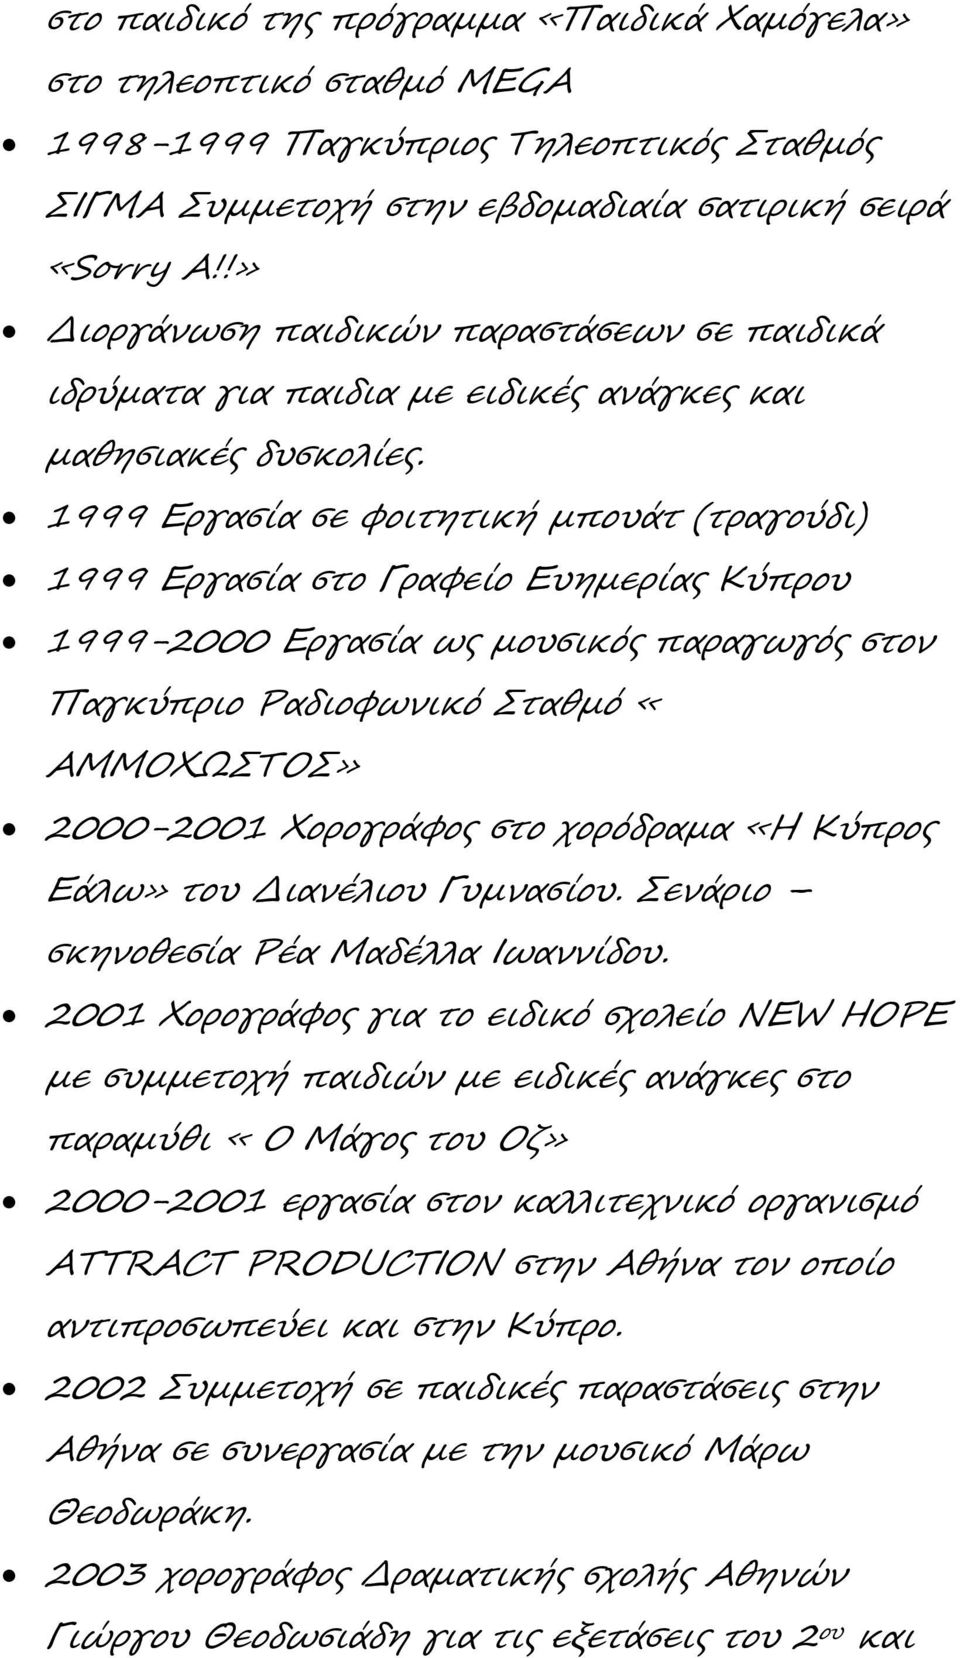 1999 Εργασία σε φοιτητική μπουάτ (τραγούδι) 1999 Εργασία στο Γραφείο Ευημερίας Κύπρου 1999-2000 Εργασία ως μουσικός παραγωγός στον Παγκύπριο Ραδιοφωνικό Σταθμό «ΑΜΜΟΧΩΣΤΟΣ» 2000-2001 Χορογράφος στο